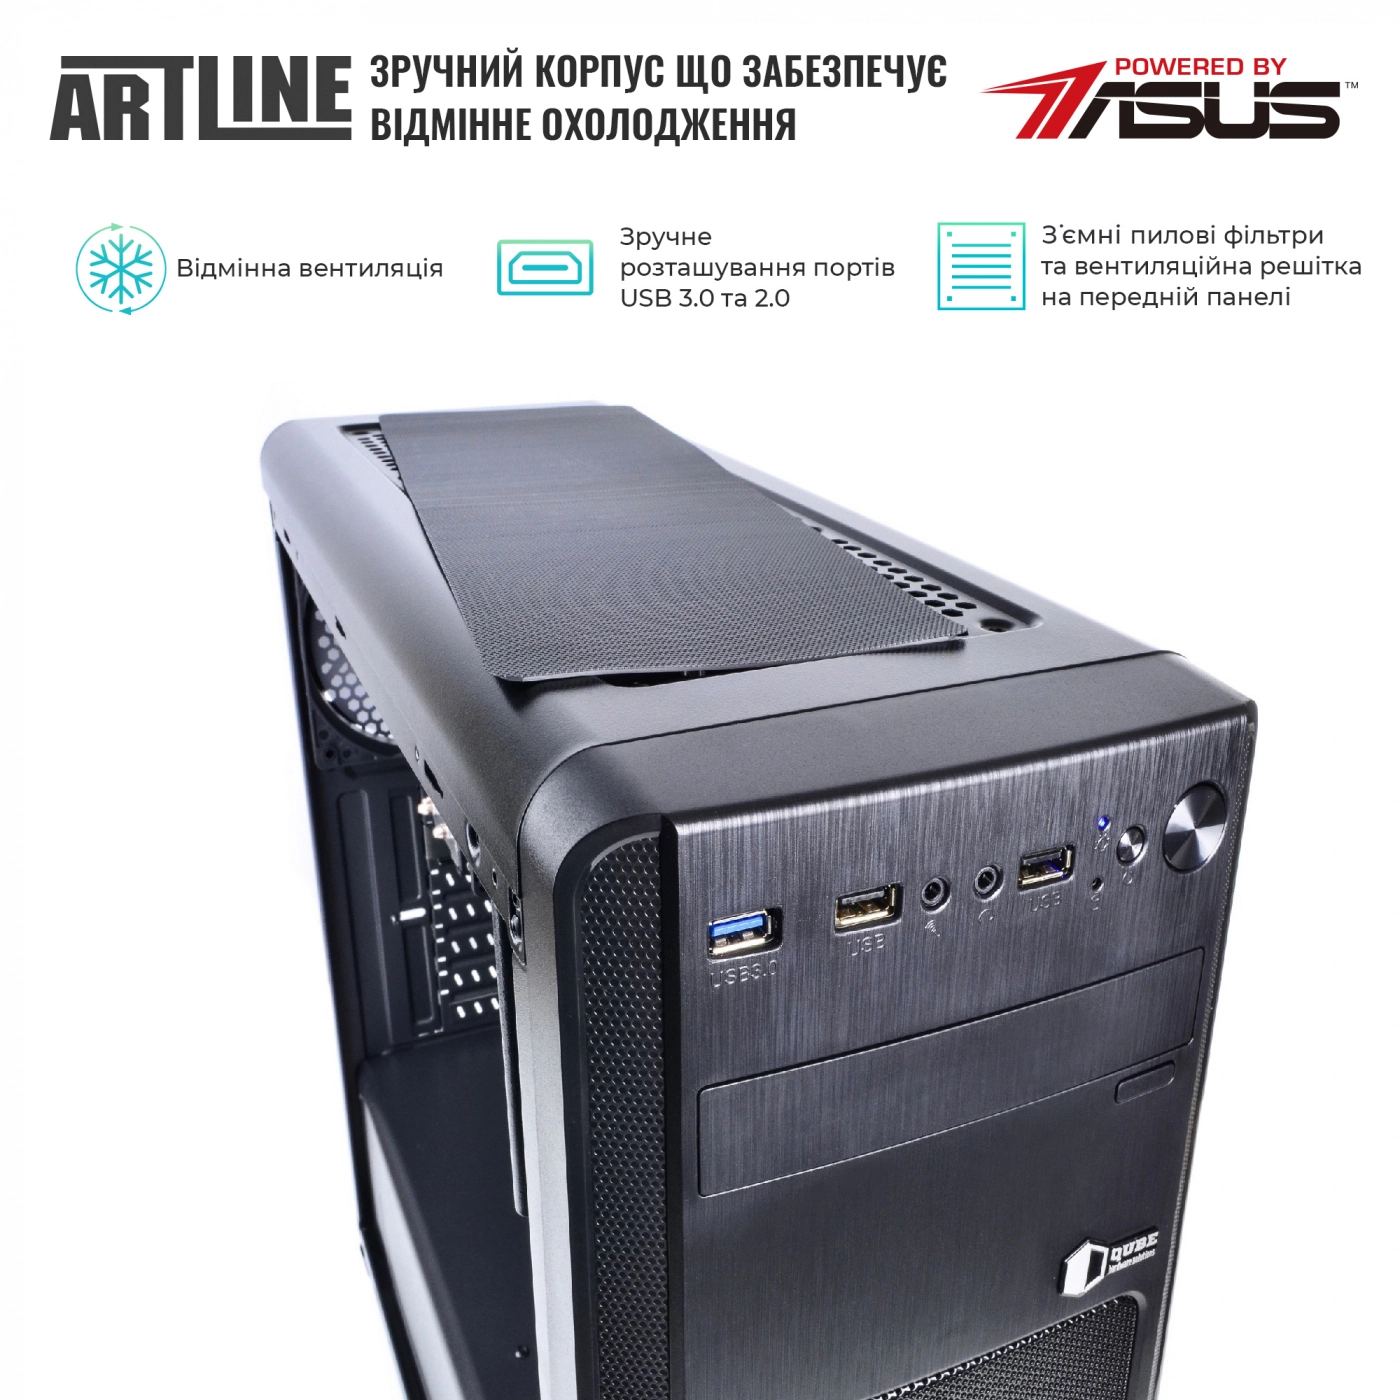 Купить Сервер ARTLINE Business T13v12 - фото 2